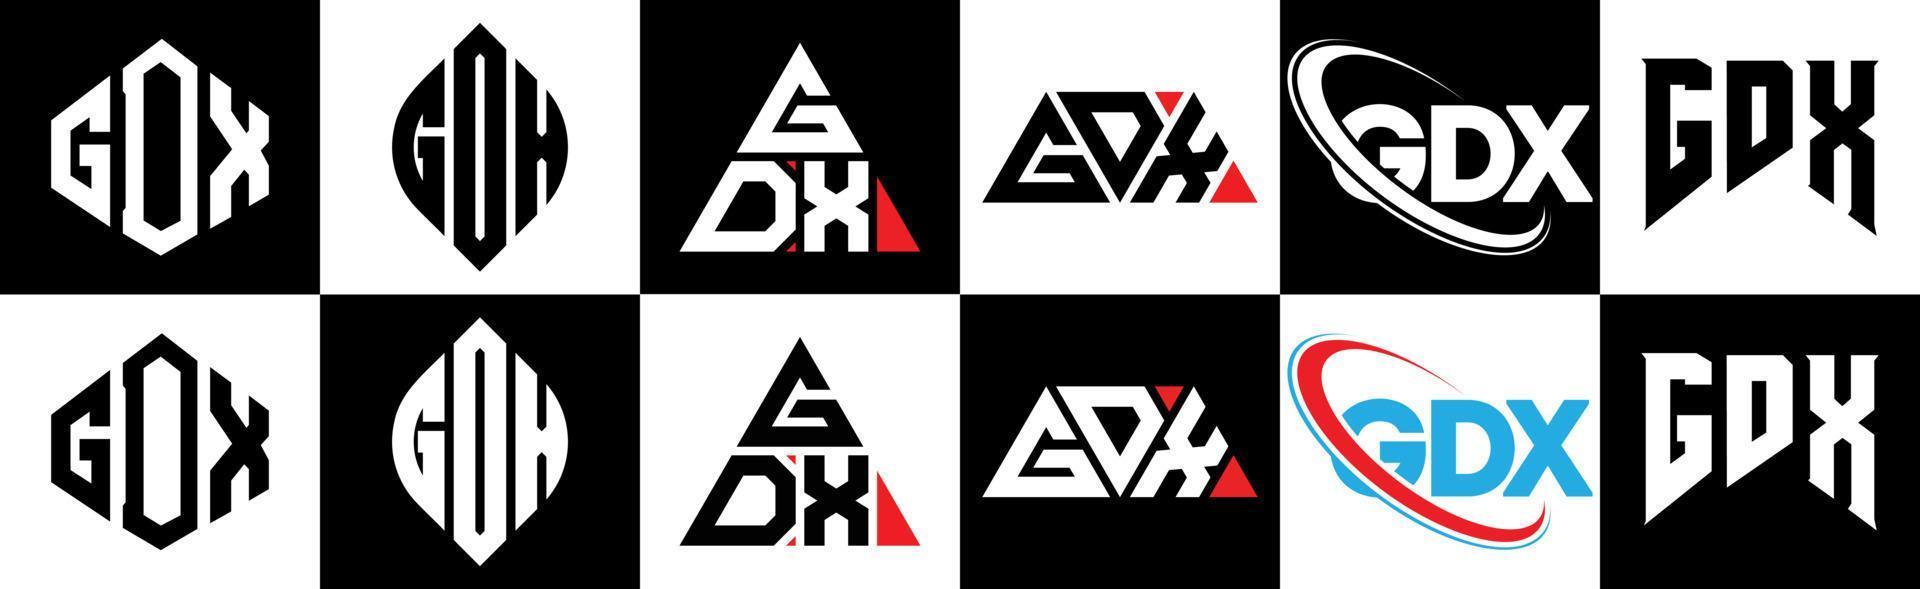 Diseño de logotipo de letra gdx en seis estilos. polígono gdx, círculo, triángulo, hexágono, estilo plano y simple con logotipo de letra de variación de color blanco y negro en una mesa de trabajo. logotipo minimalista y clásico de gdx vector